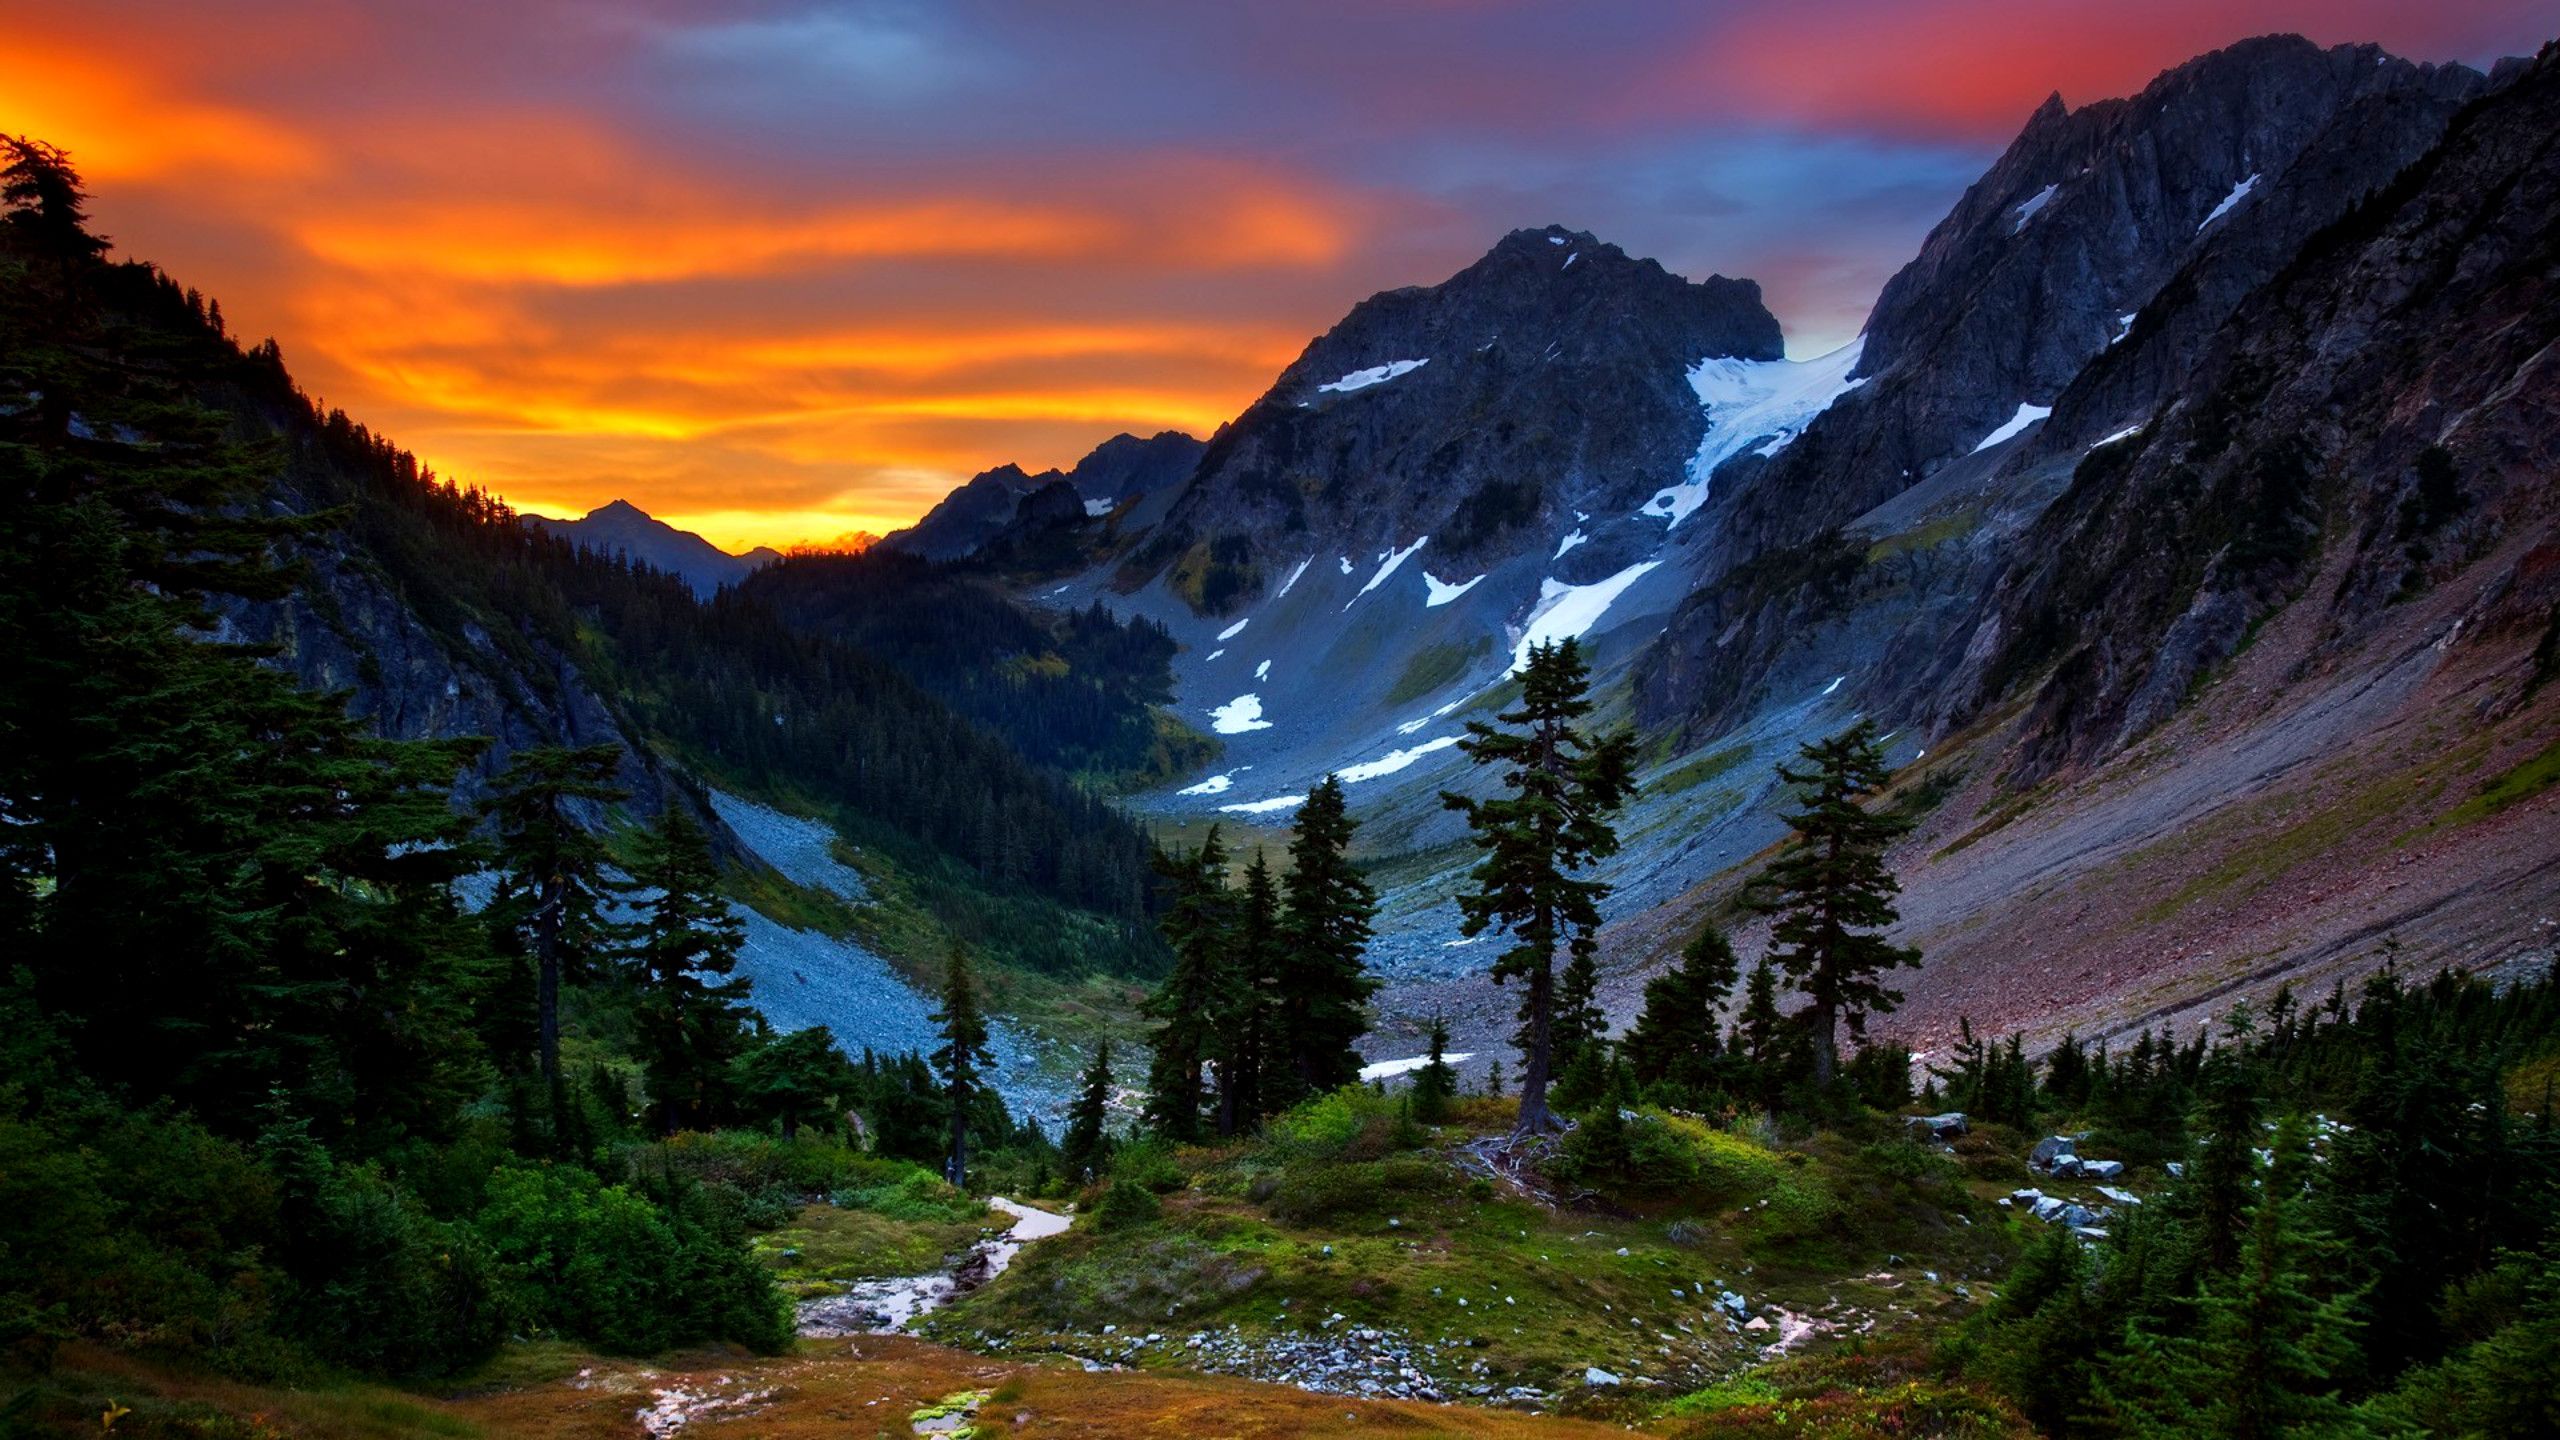 Mountain Background Image